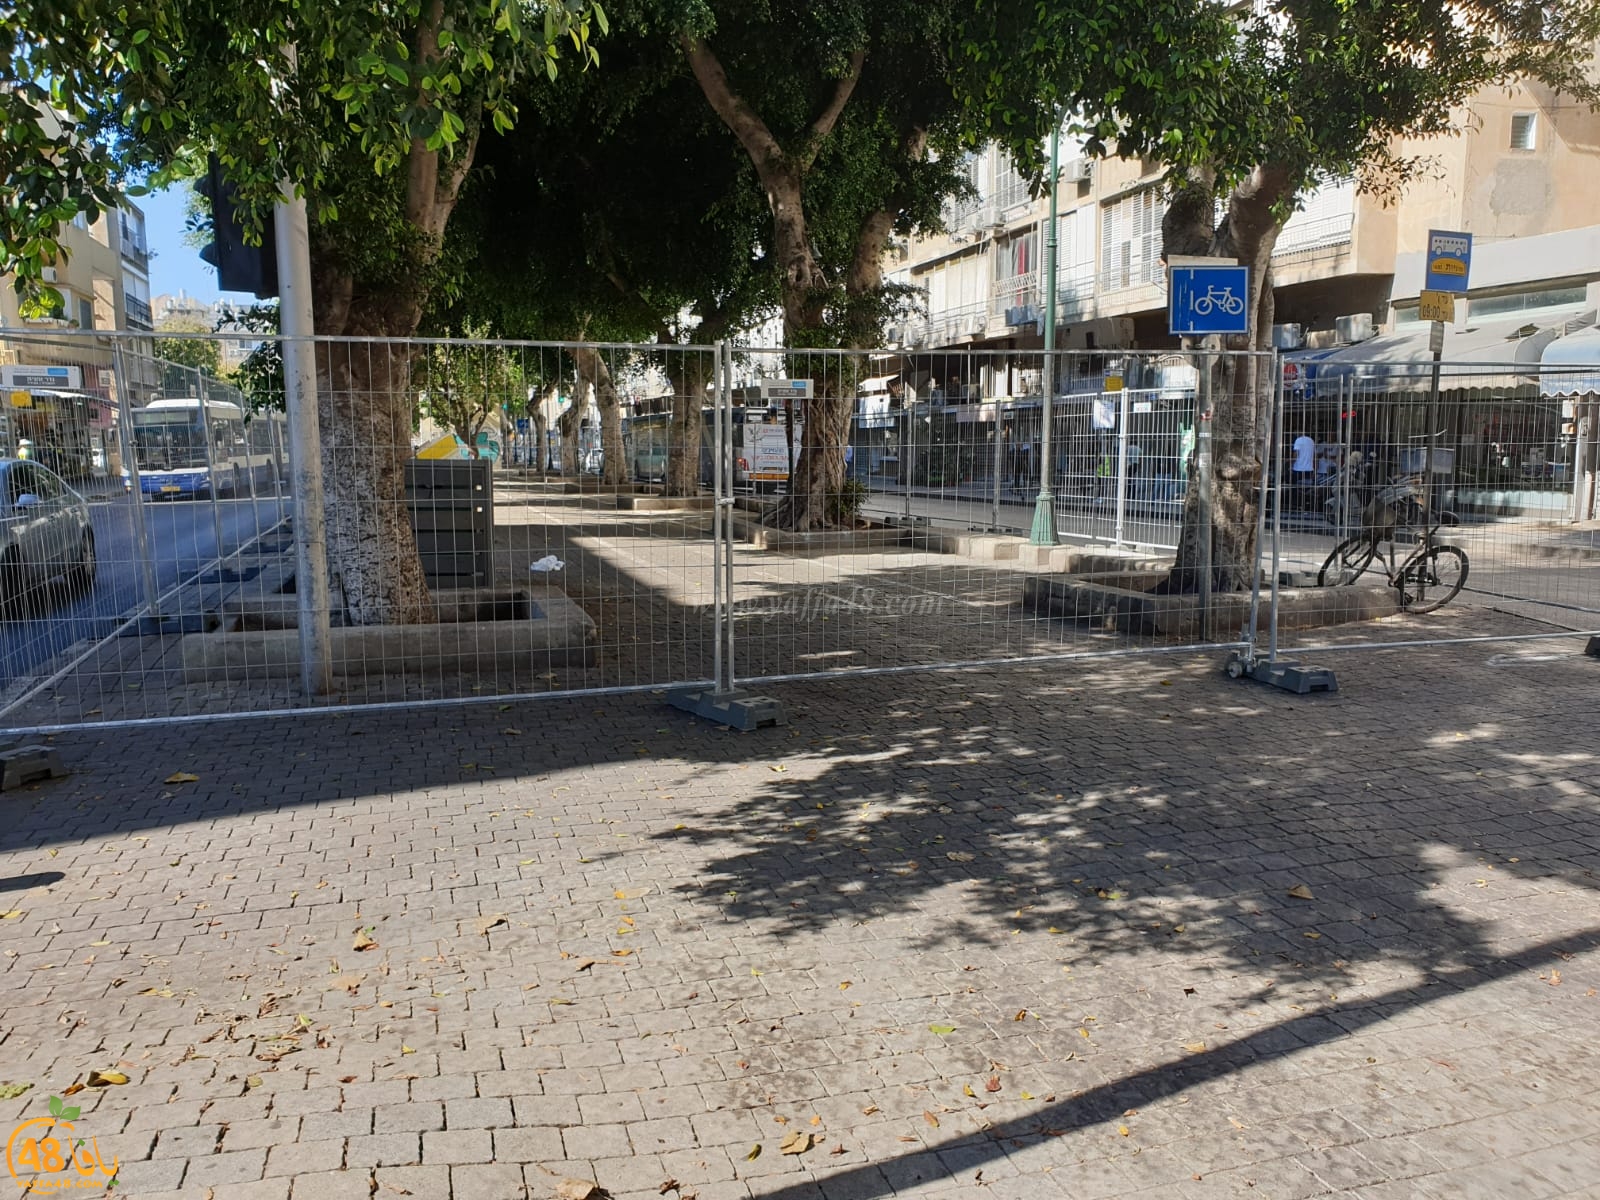 بالصور: البدء بإغلاق مقاطع ومسارات بشارع شديروت يروشلايم في يافا 